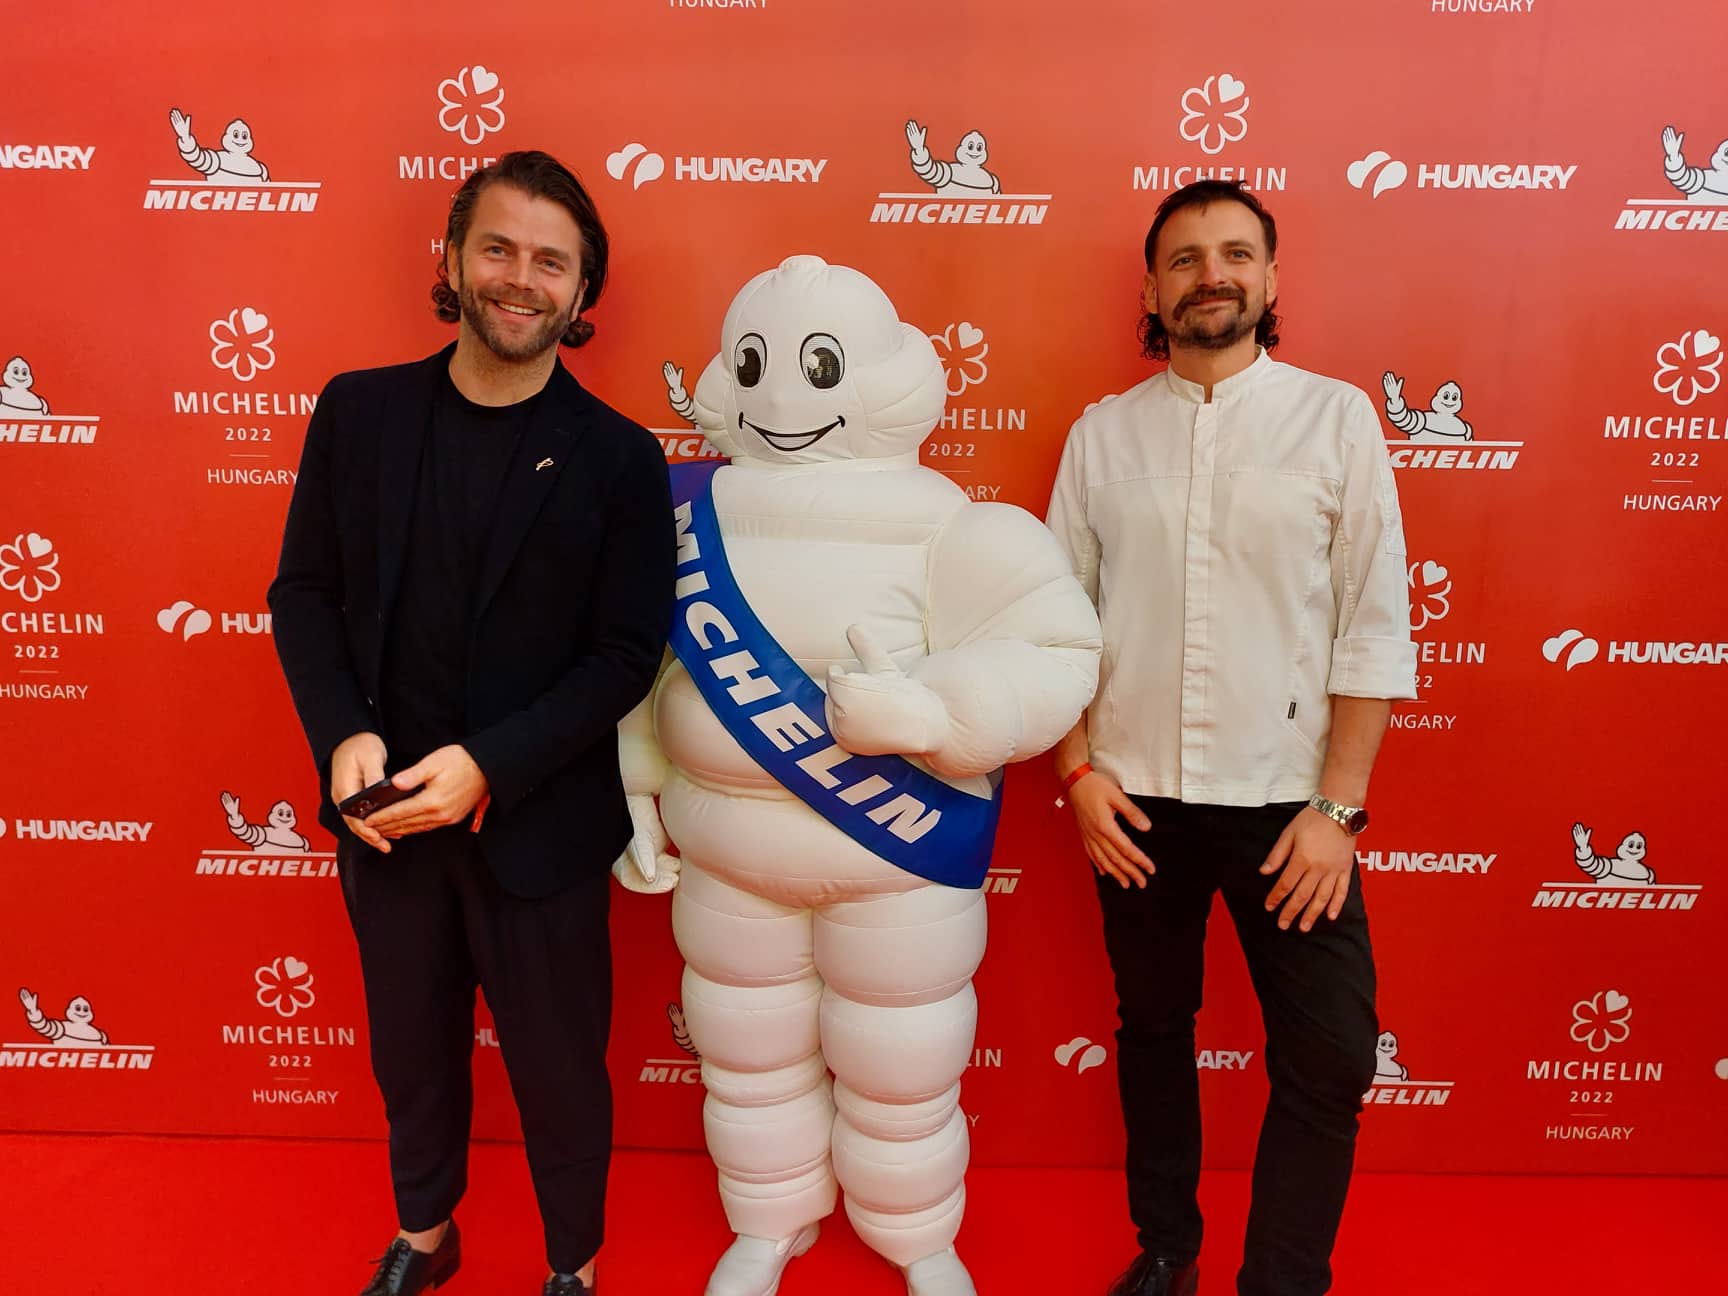 Két darab két Michelin-csillagos étterme és vidéki csillagos étterme is lett Magyarországnak 2022-ben